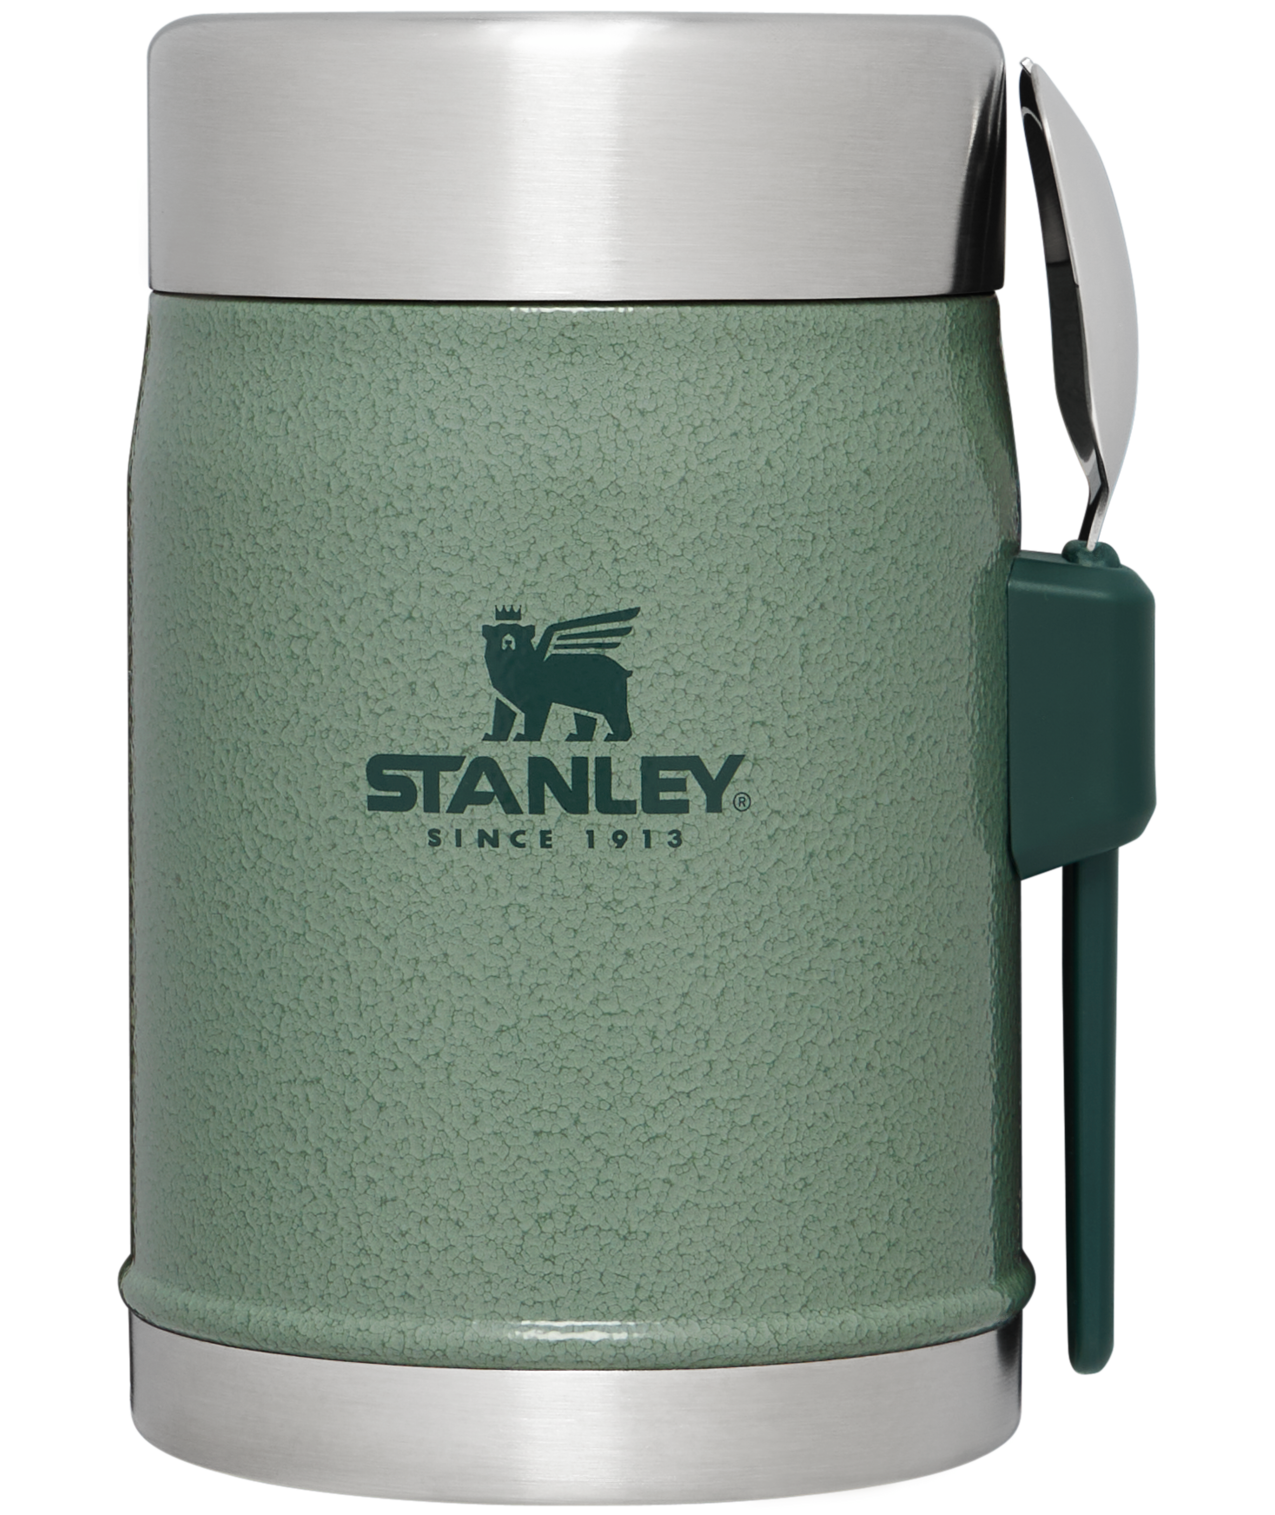 This Stanley Cooking pot : r/BuyItForLife